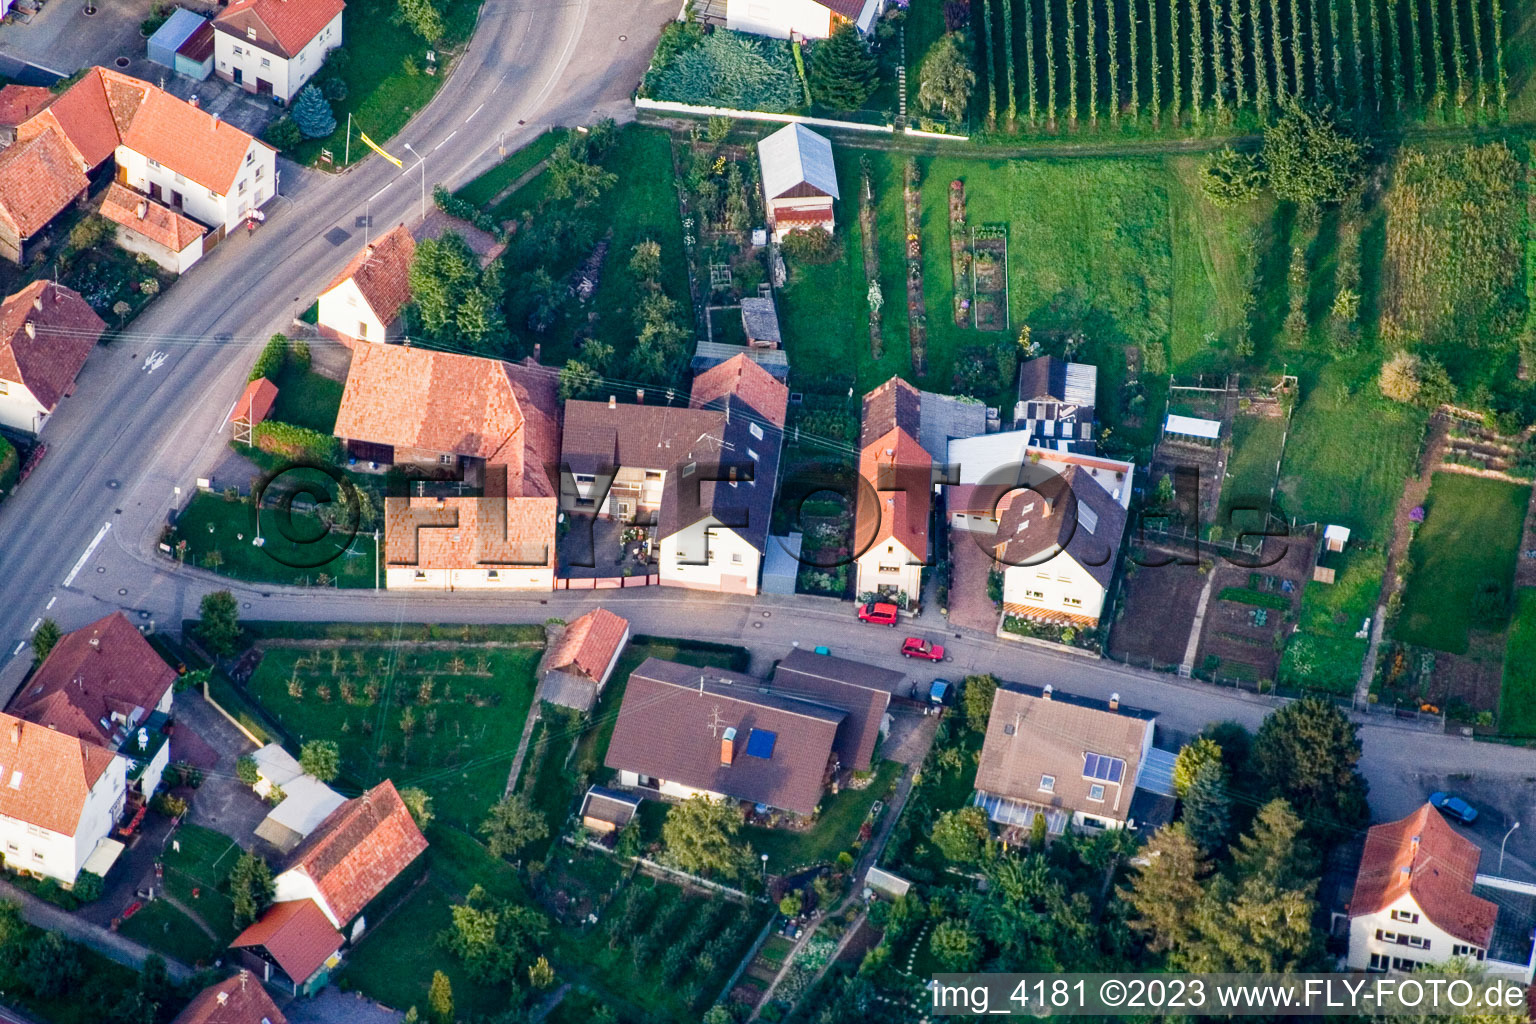 District Schweigen in Schweigen-Rechtenbach in the state Rhineland-Palatinate, Germany out of the air